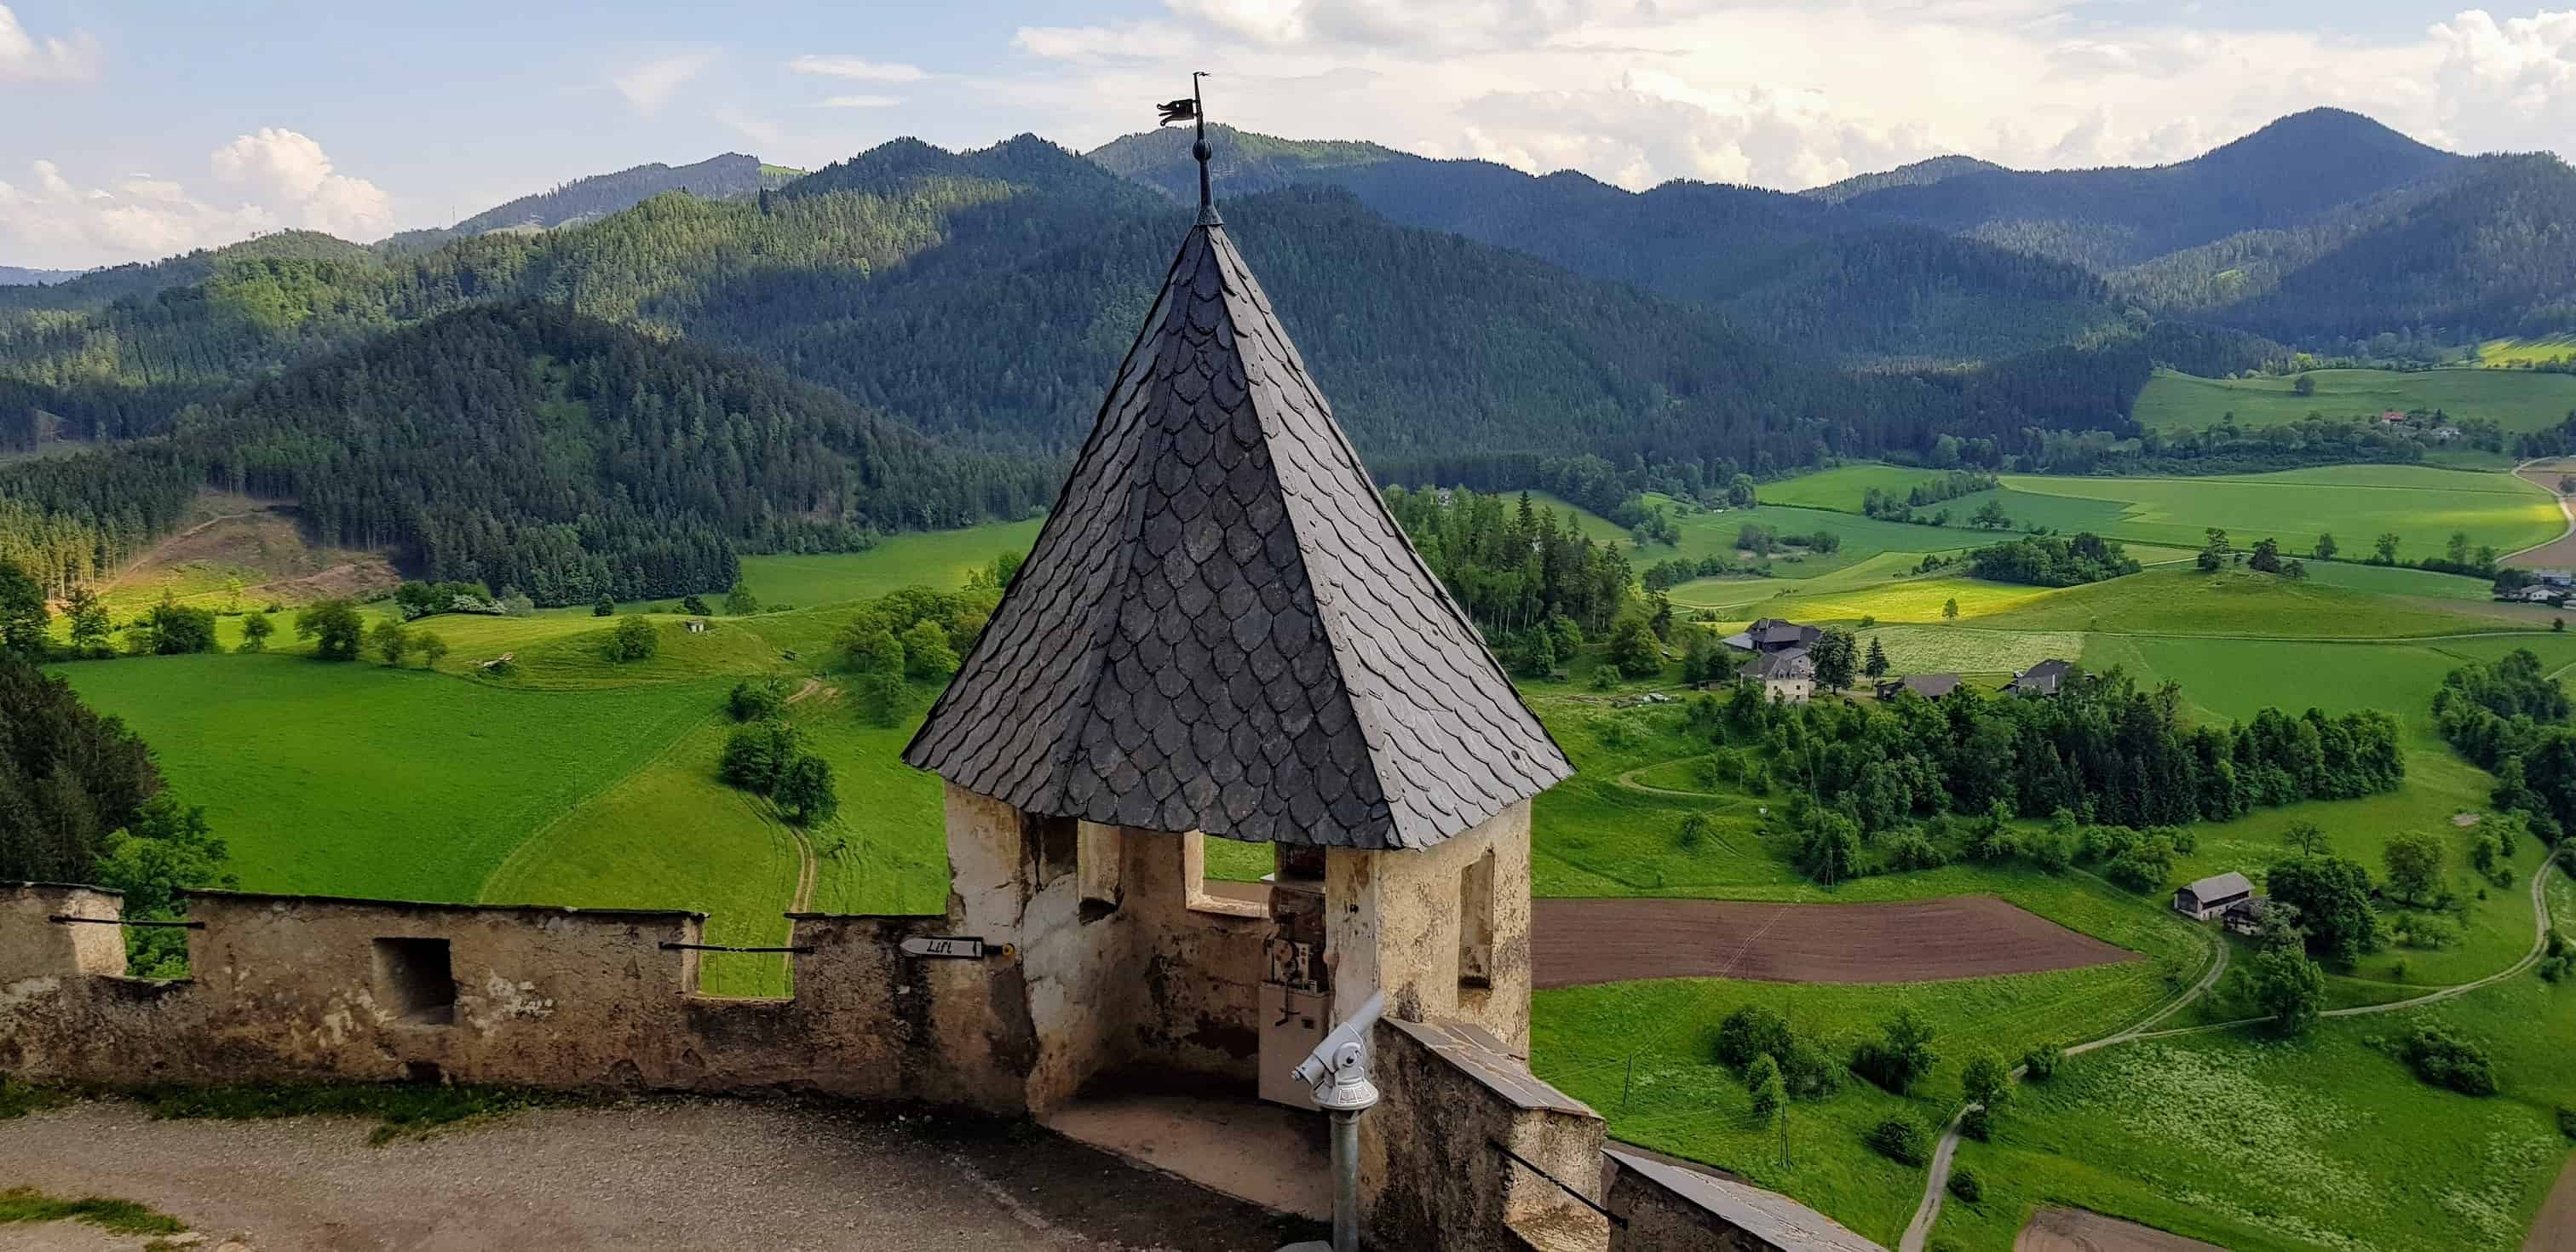 Wanderung und Ausflug auf Burg Hochosterwitz in Kärnten, Österreich. Aussichtspunkt.